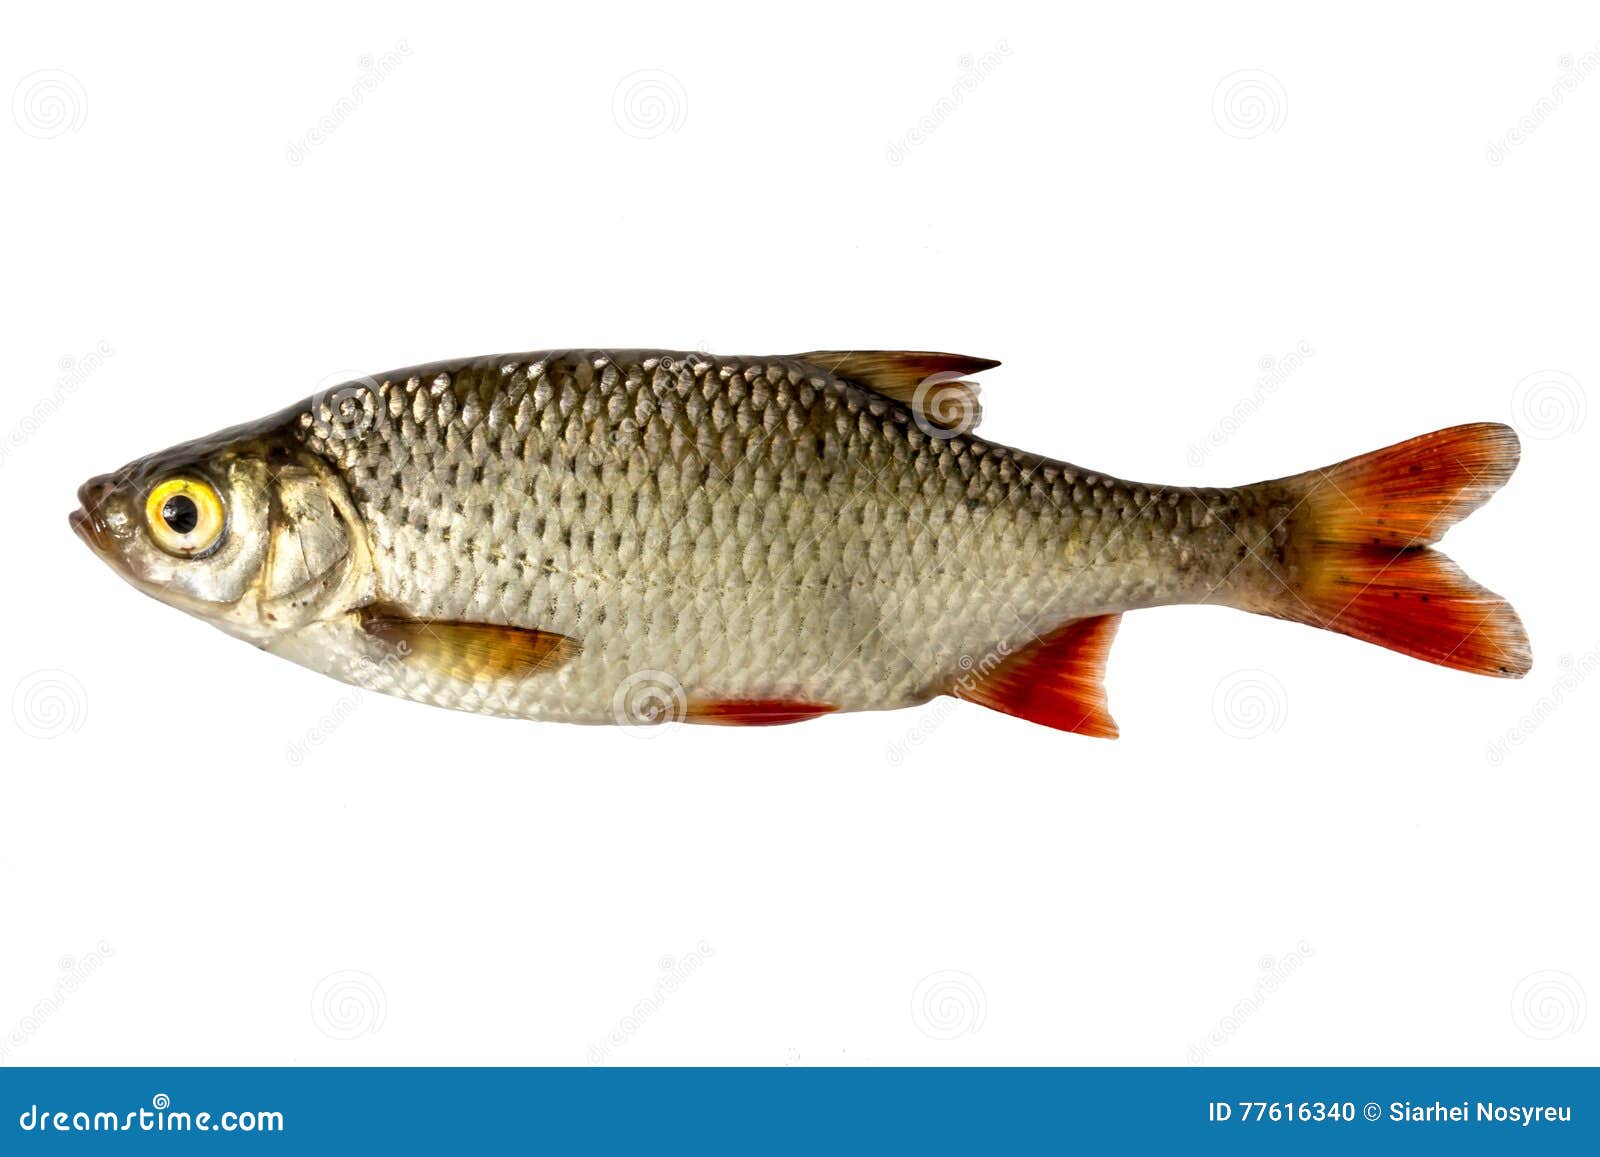 Рыба с красными плавниками речная. Рыба с красными плавниками. Рыба в речке с красными плавниками. Серебристая рыба с красными плавниками.